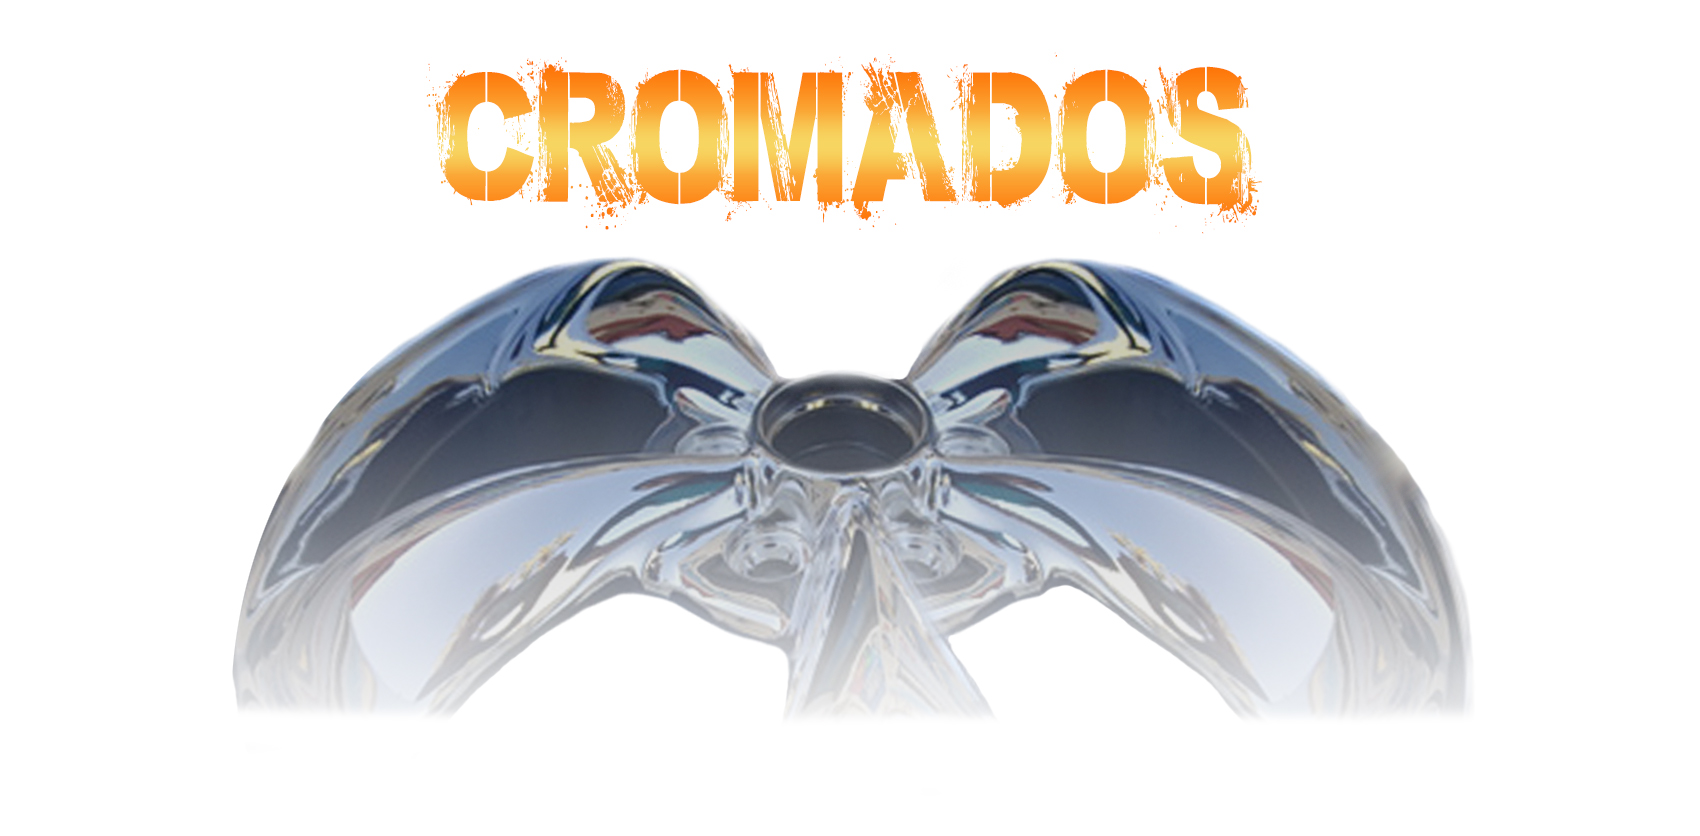 Cromats